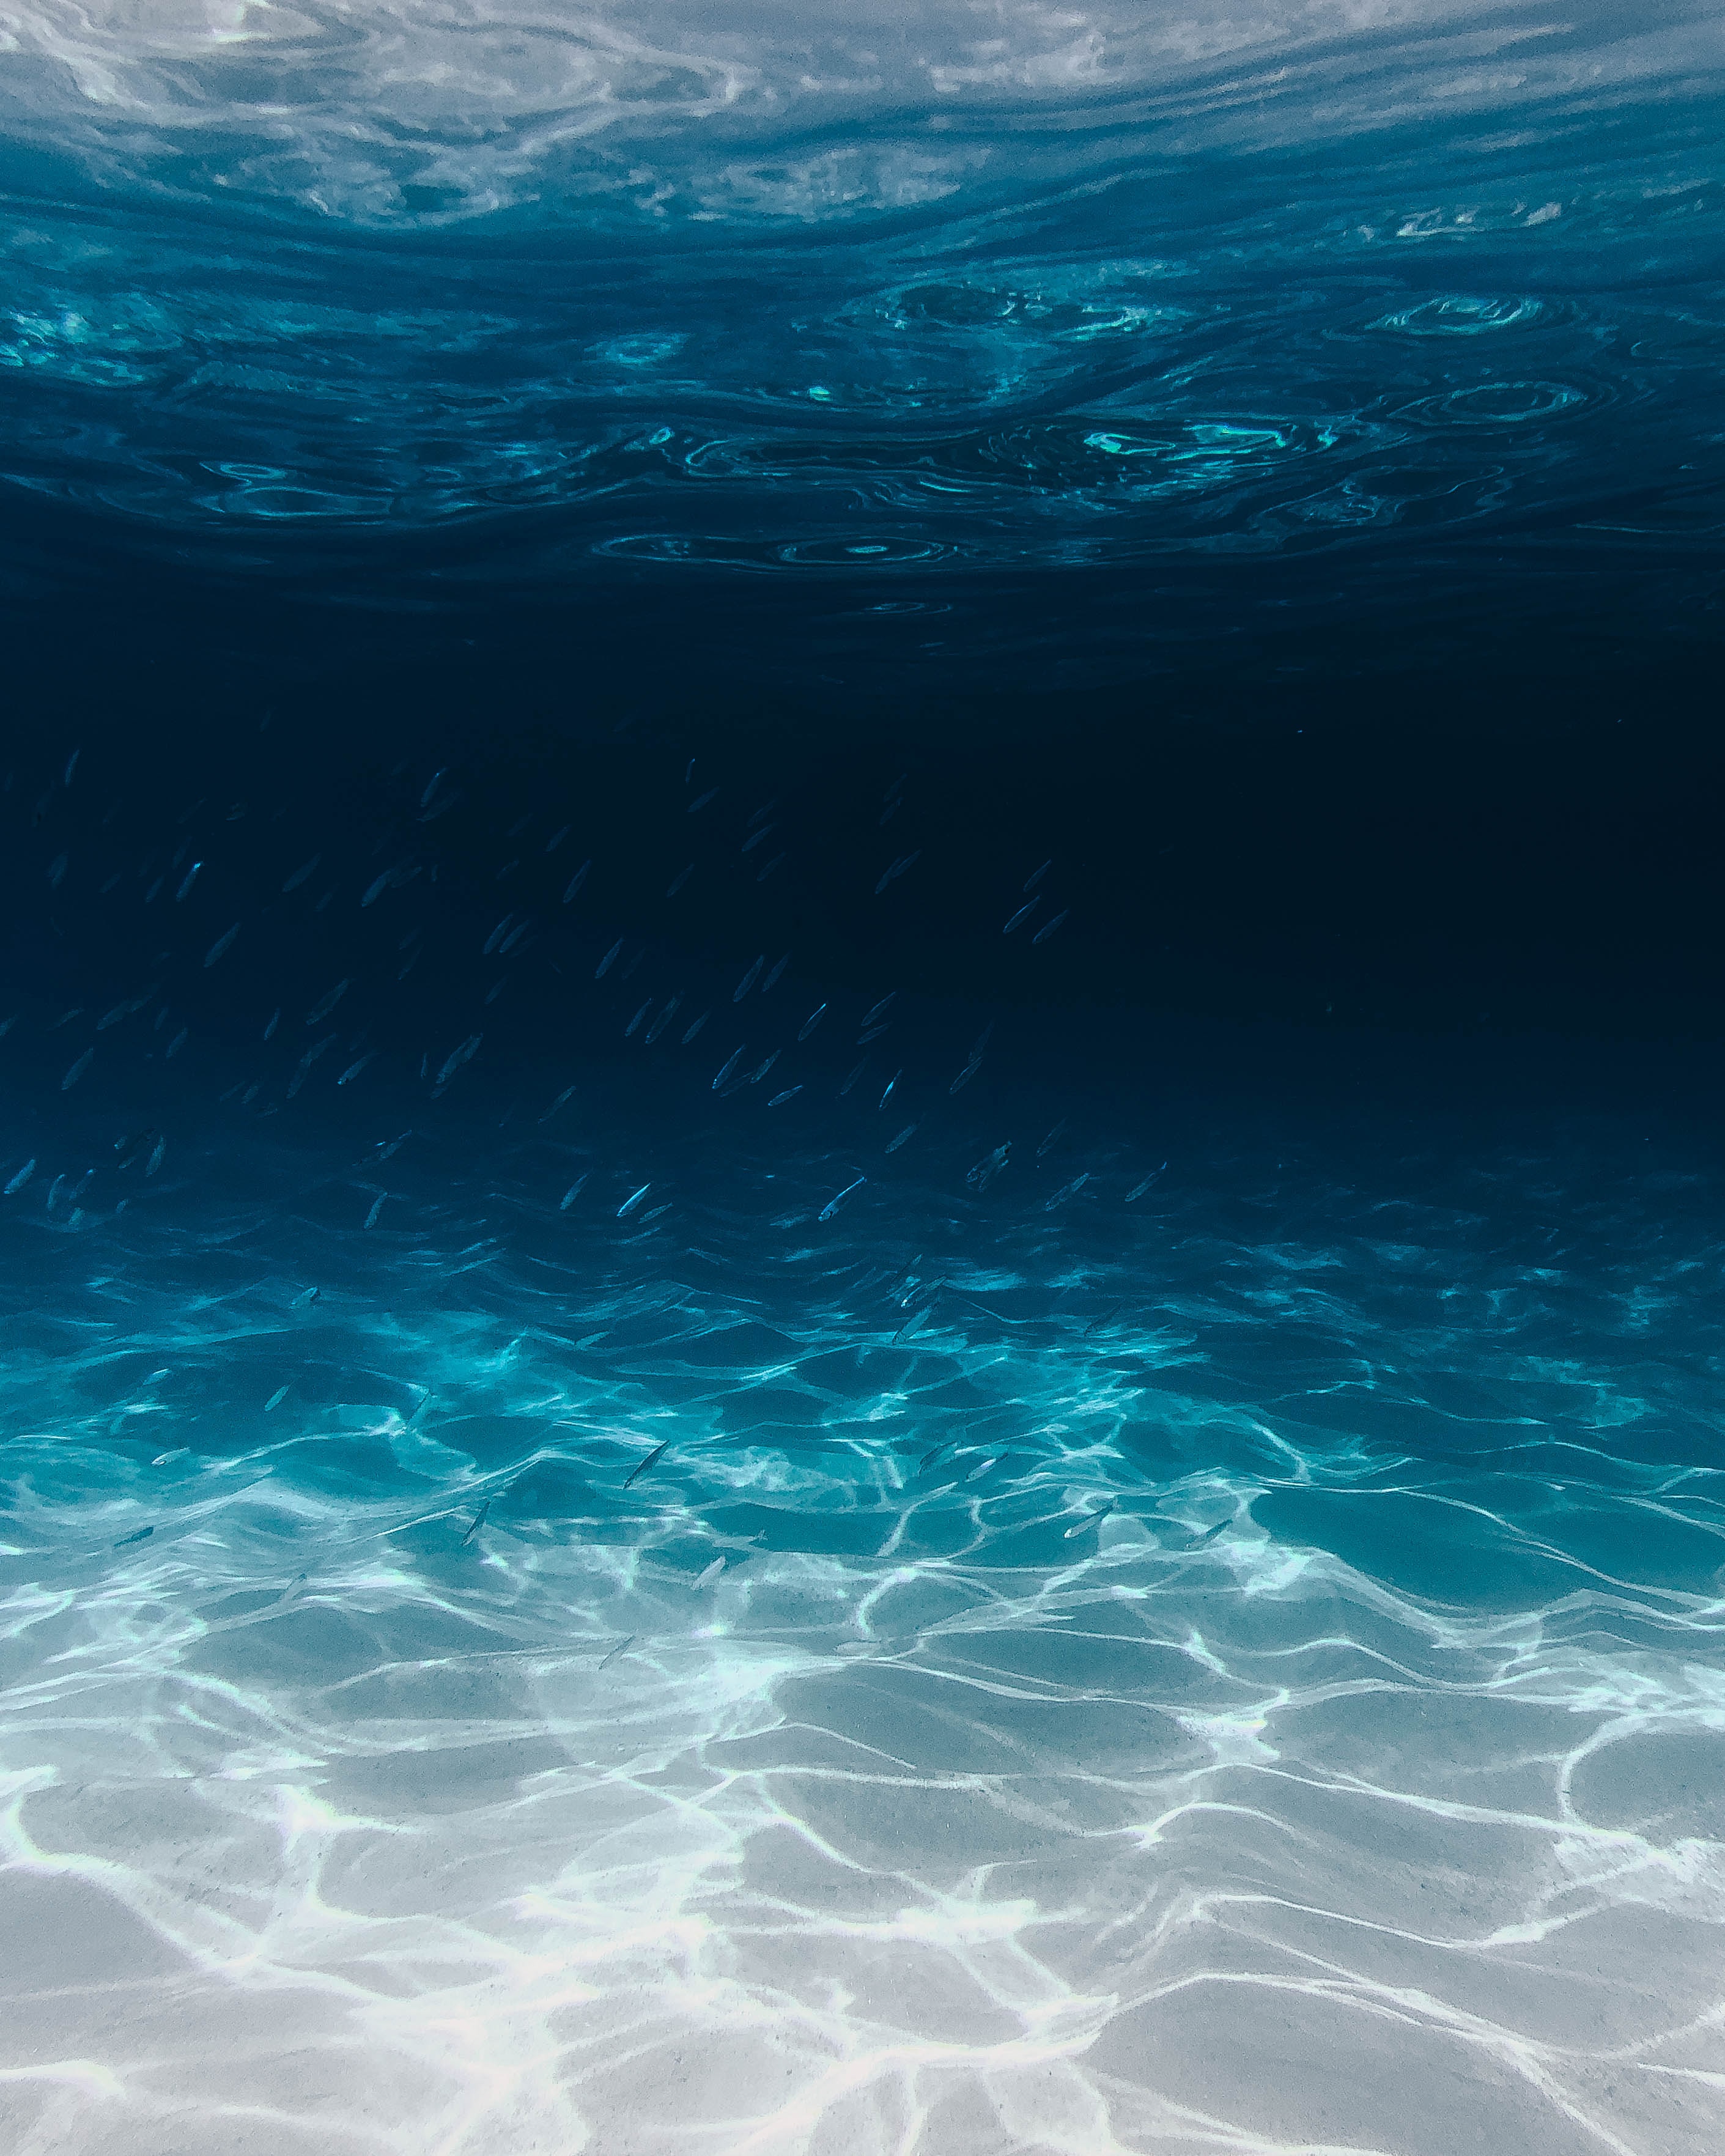 An underwater image.│ Source: Unsplash